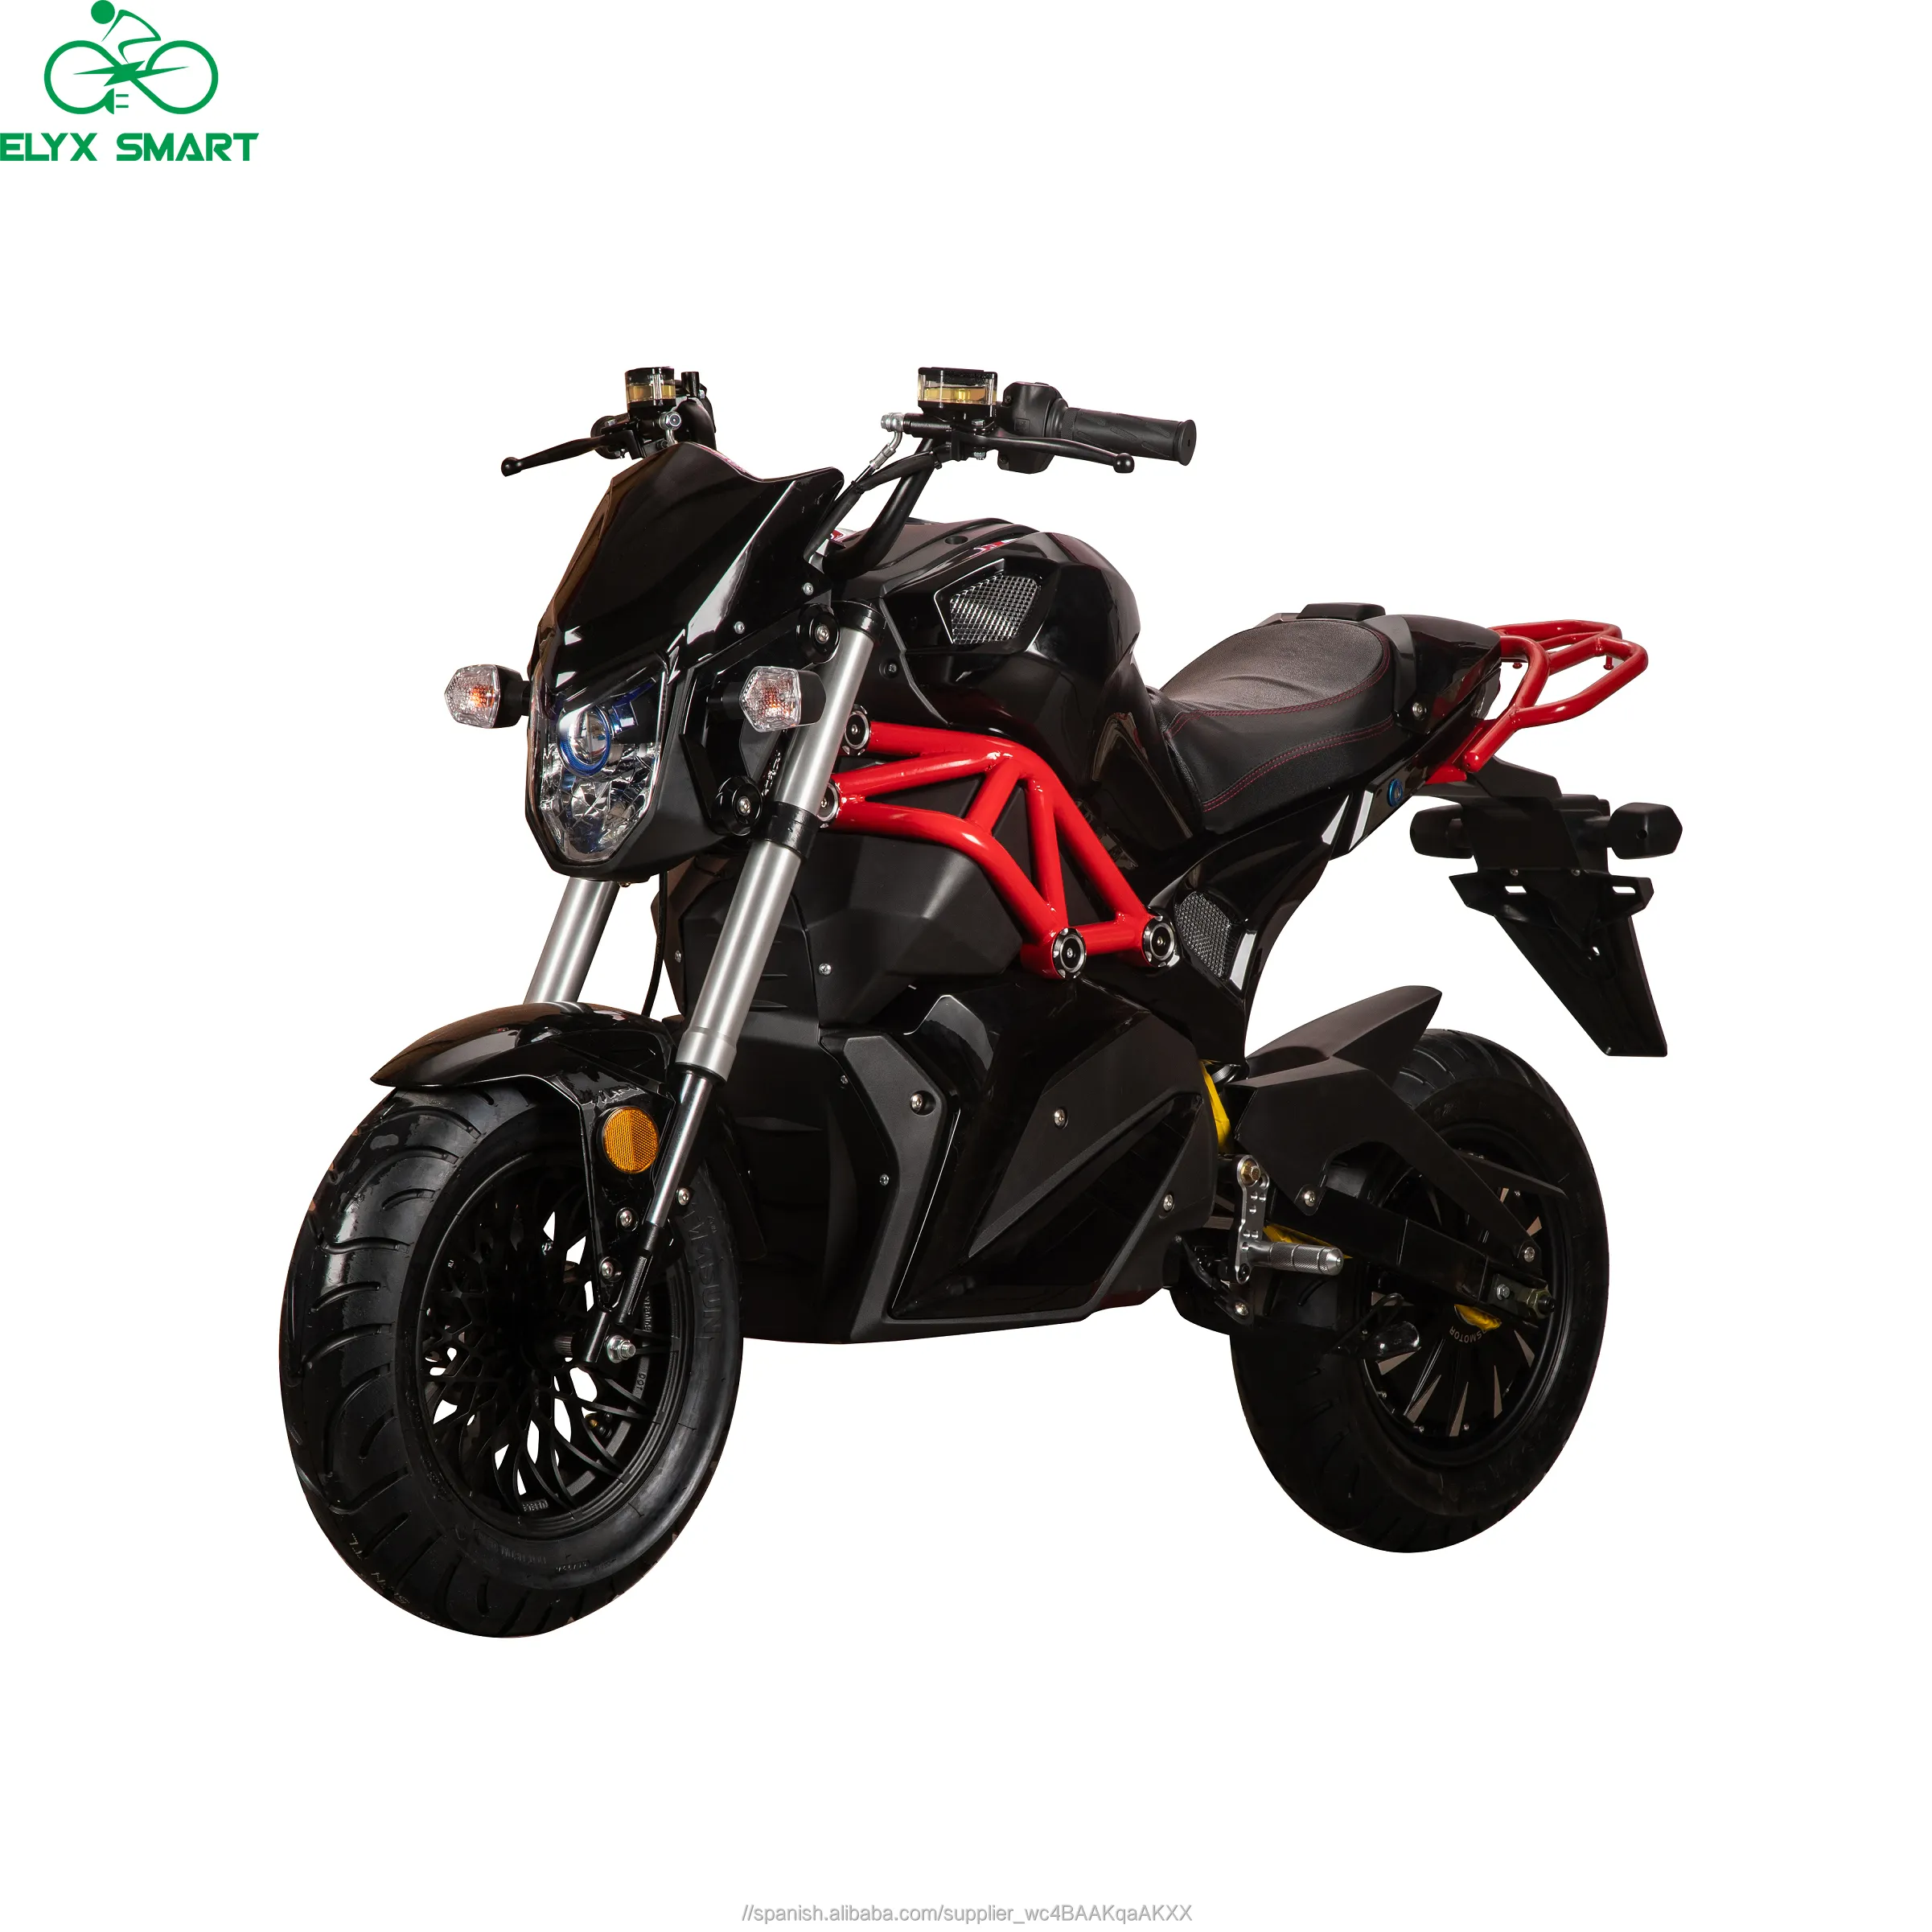 Elyx 2020 OEM fábrica otros motocicletas de carretera CEE motocicleta eléctrica 45 KM/H bolsillo de Motor de bicicleta ciclos